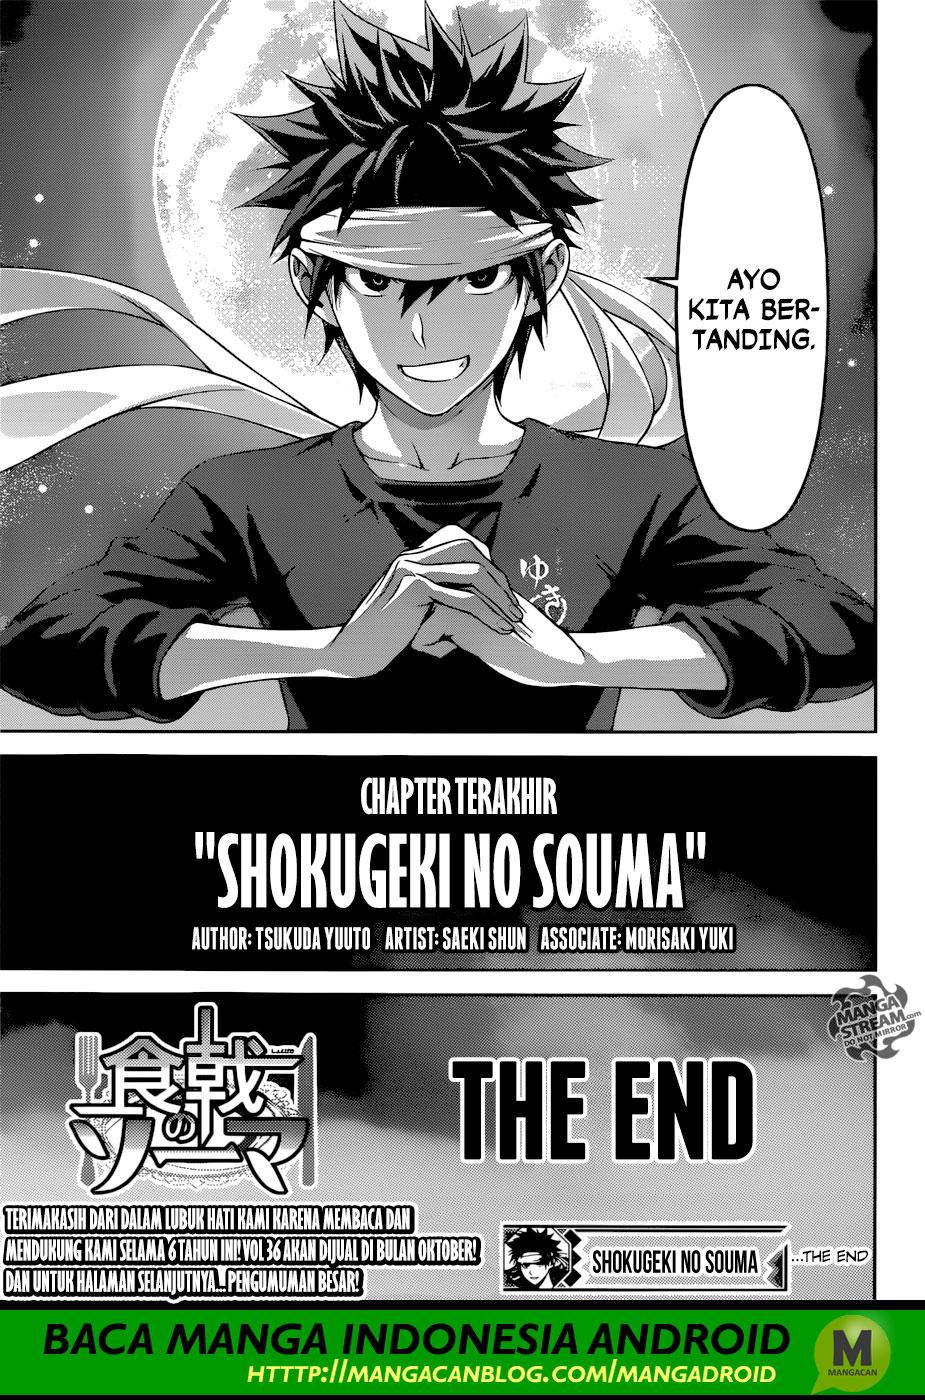 Shokugeki no Souma Chapter 315 - End